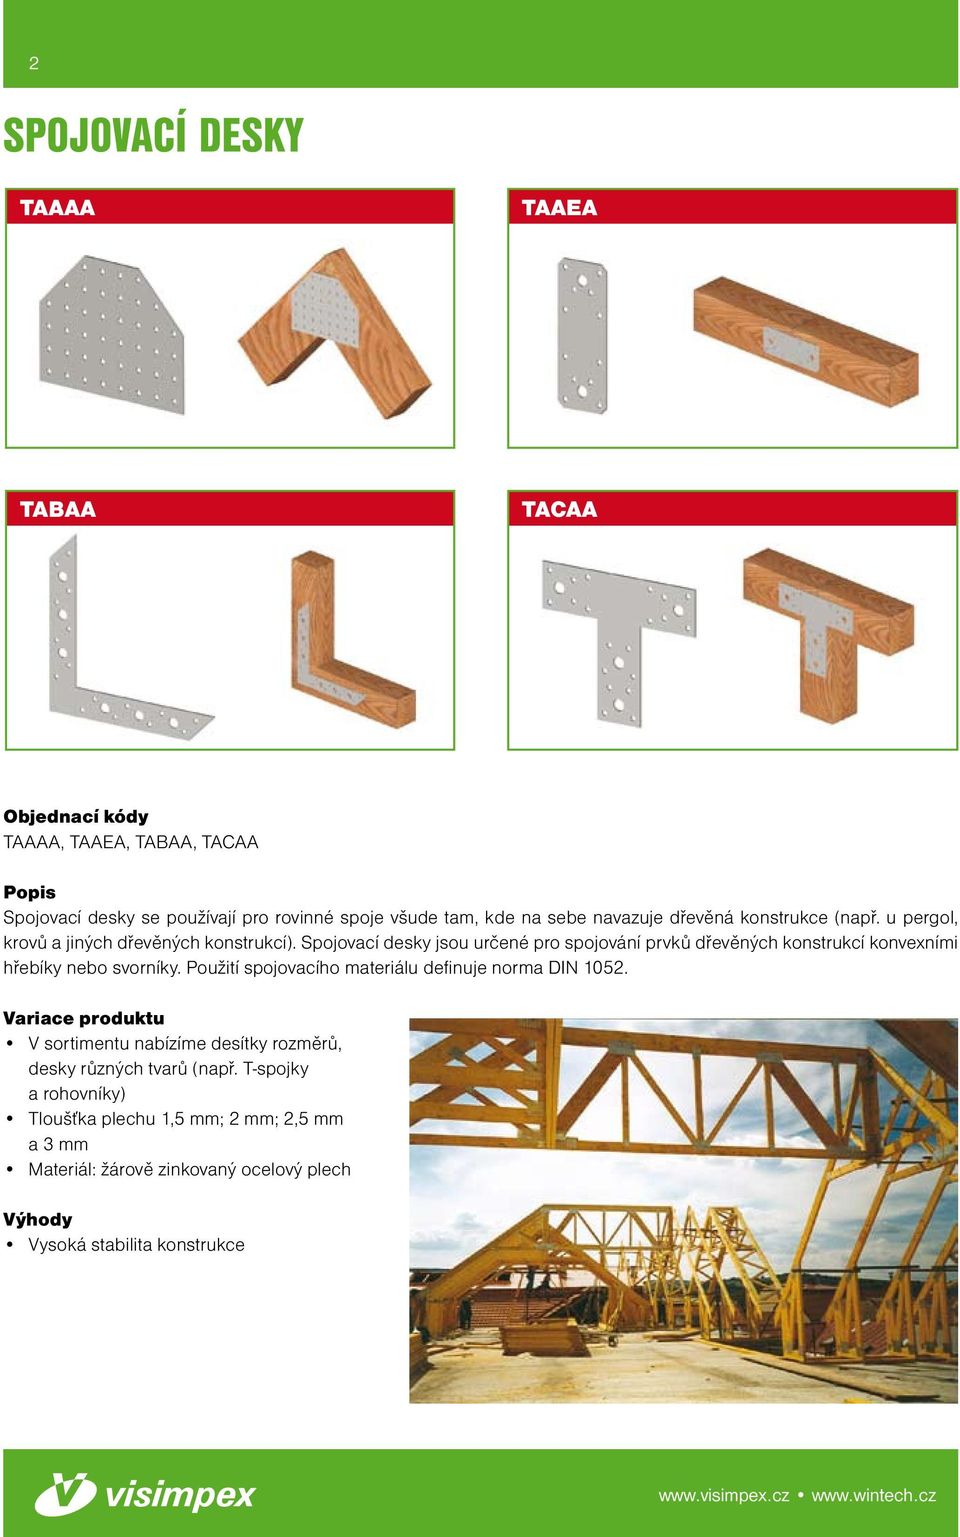 Spojovací desky jsou určené pro spojování prvků dřevěných konstrukcí konvexními hřebíky nebo svorníky.